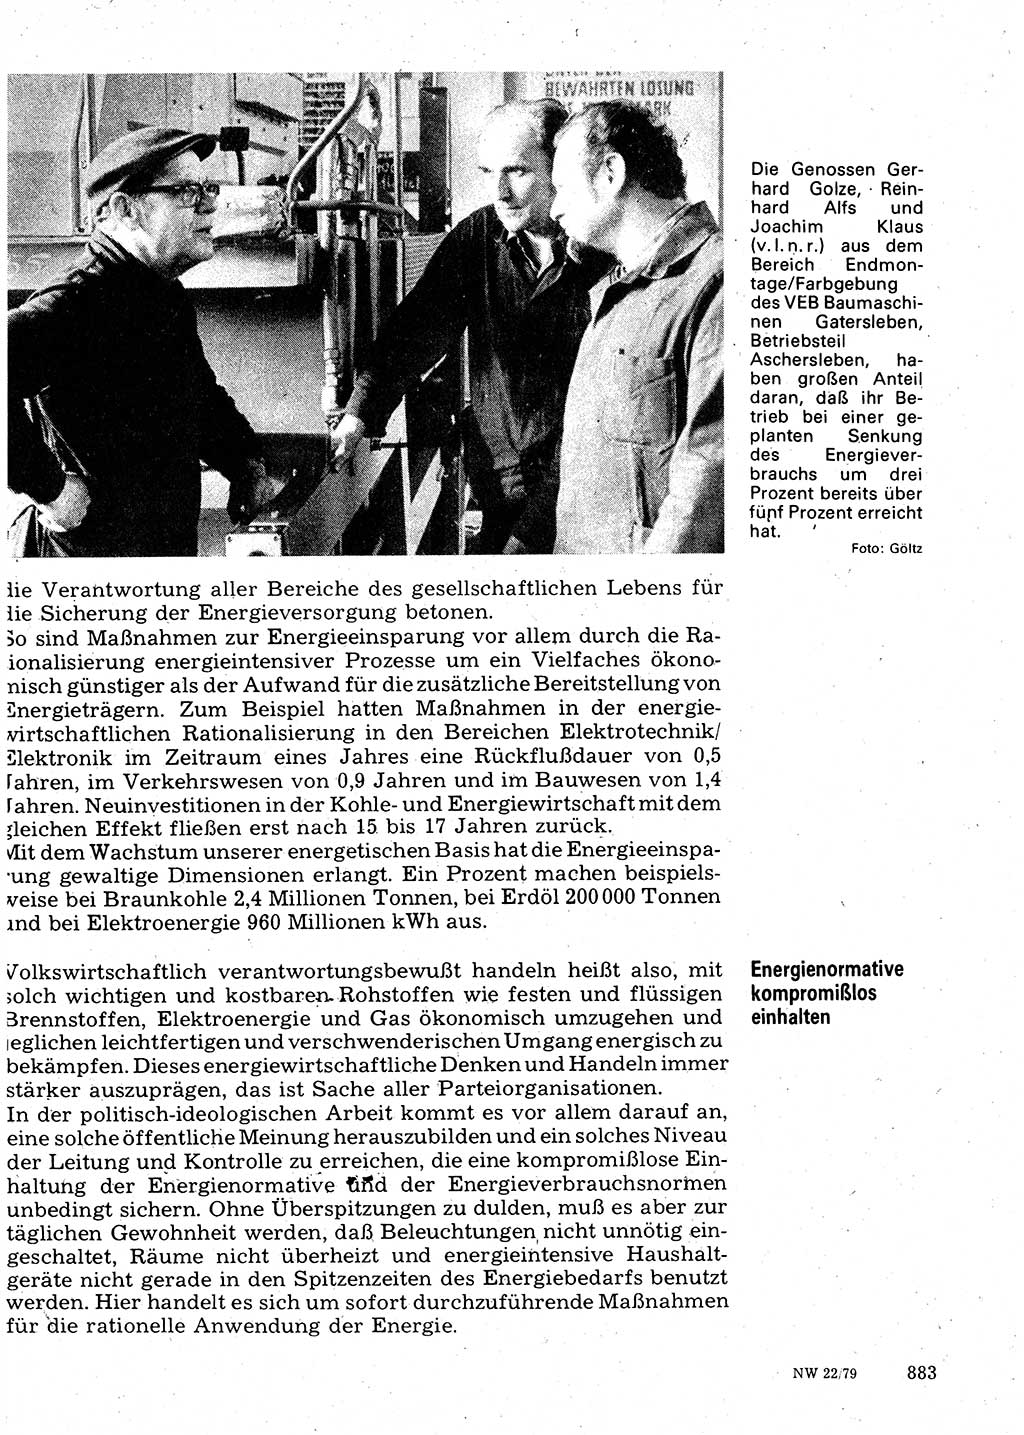 Neuer Weg (NW), Organ des Zentralkomitees (ZK) der SED (Sozialistische Einheitspartei Deutschlands) für Fragen des Parteilebens, 34. Jahrgang [Deutsche Demokratische Republik (DDR)] 1979, Seite 883 (NW ZK SED DDR 1979, S. 883)